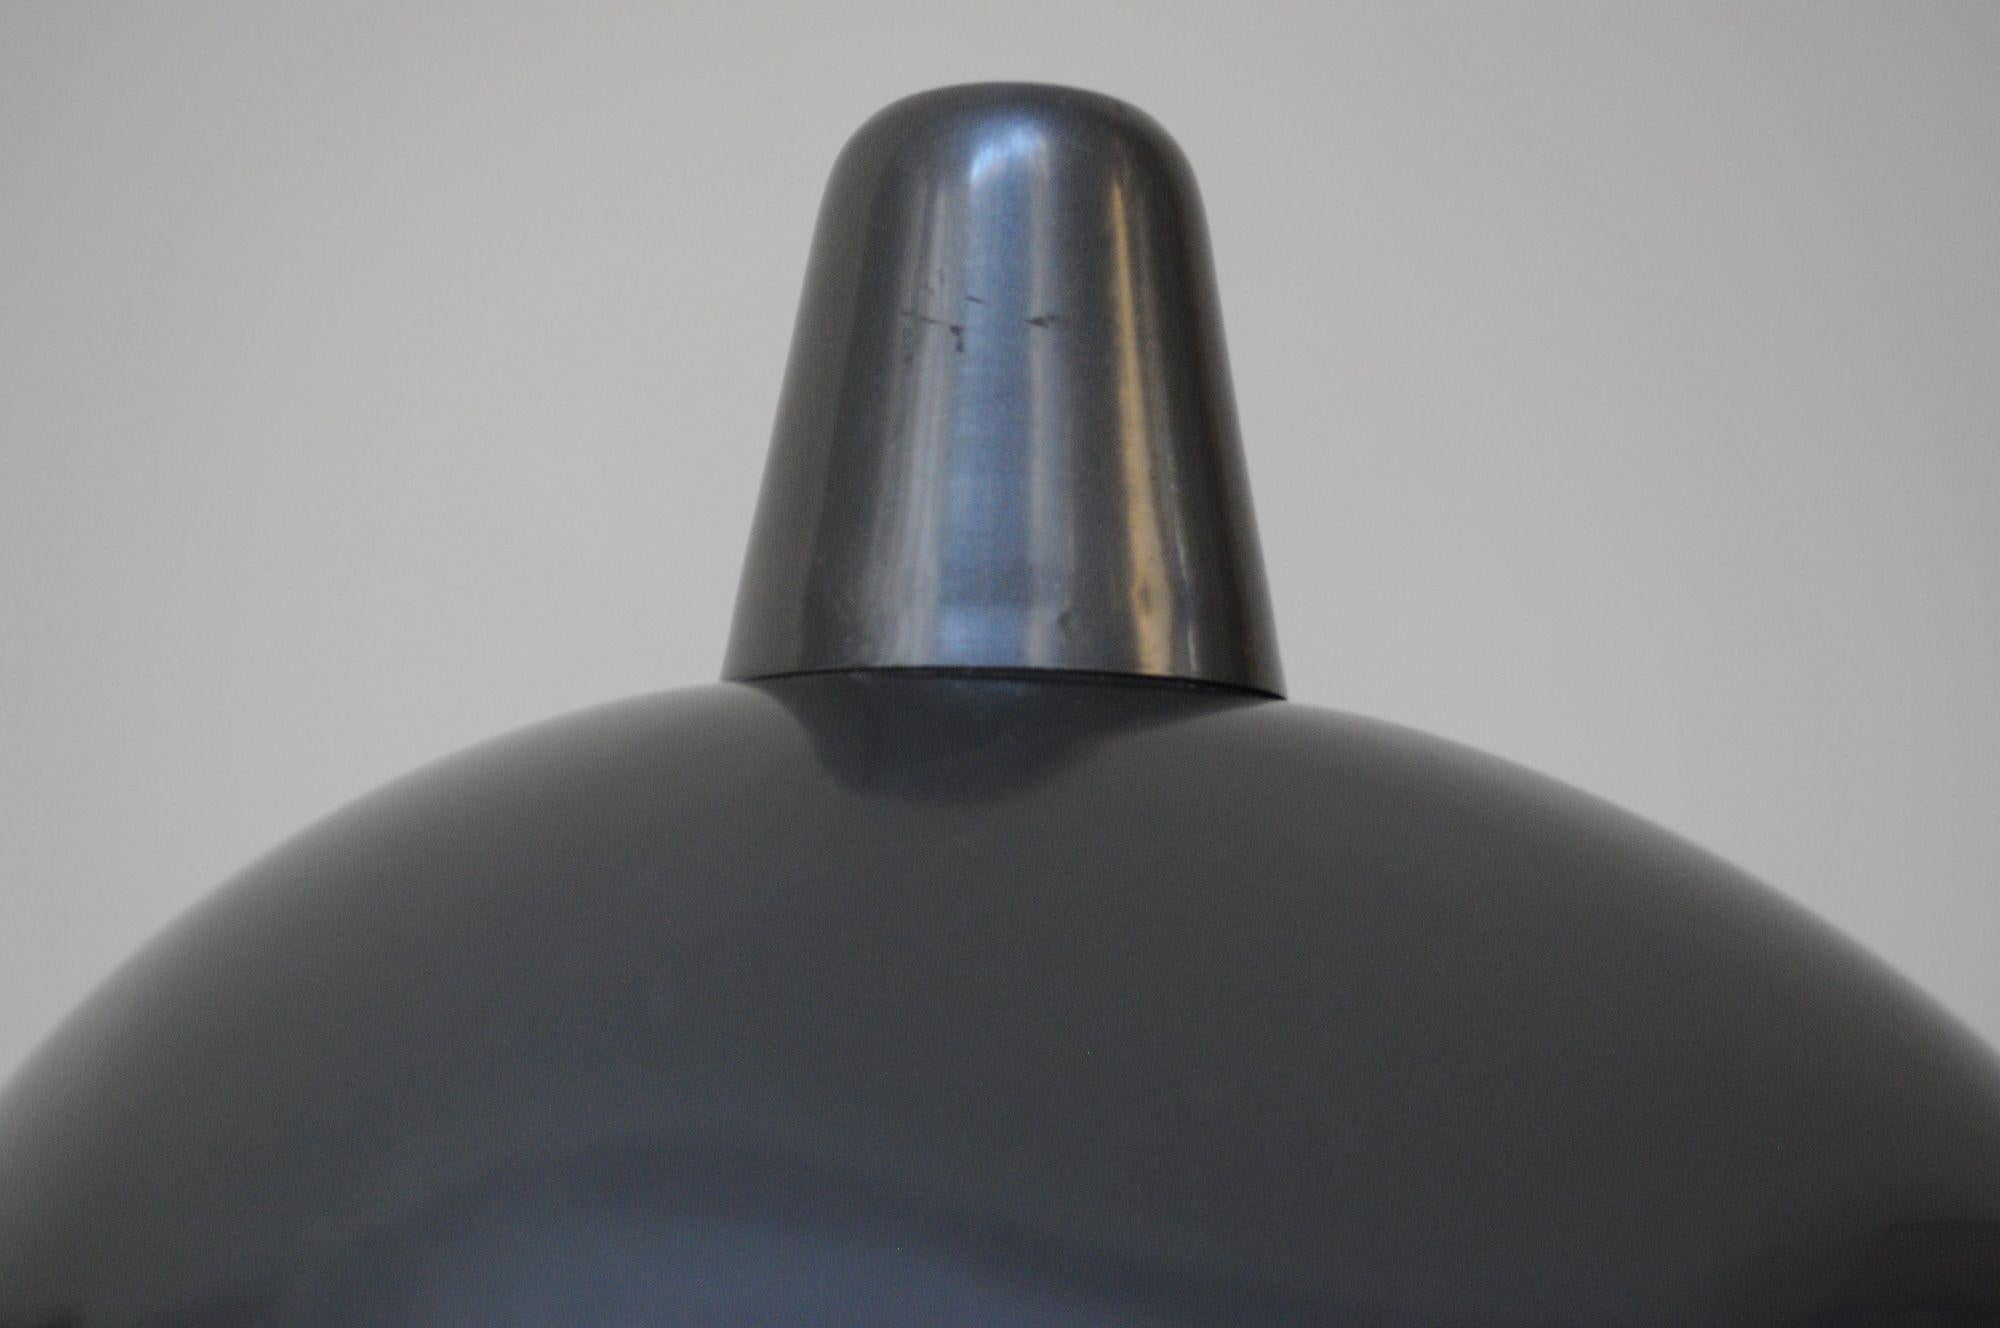 Pair of Vintage Italian Modern Industrial Chromed-Metal Task Lamps by Seminara For Sale 8